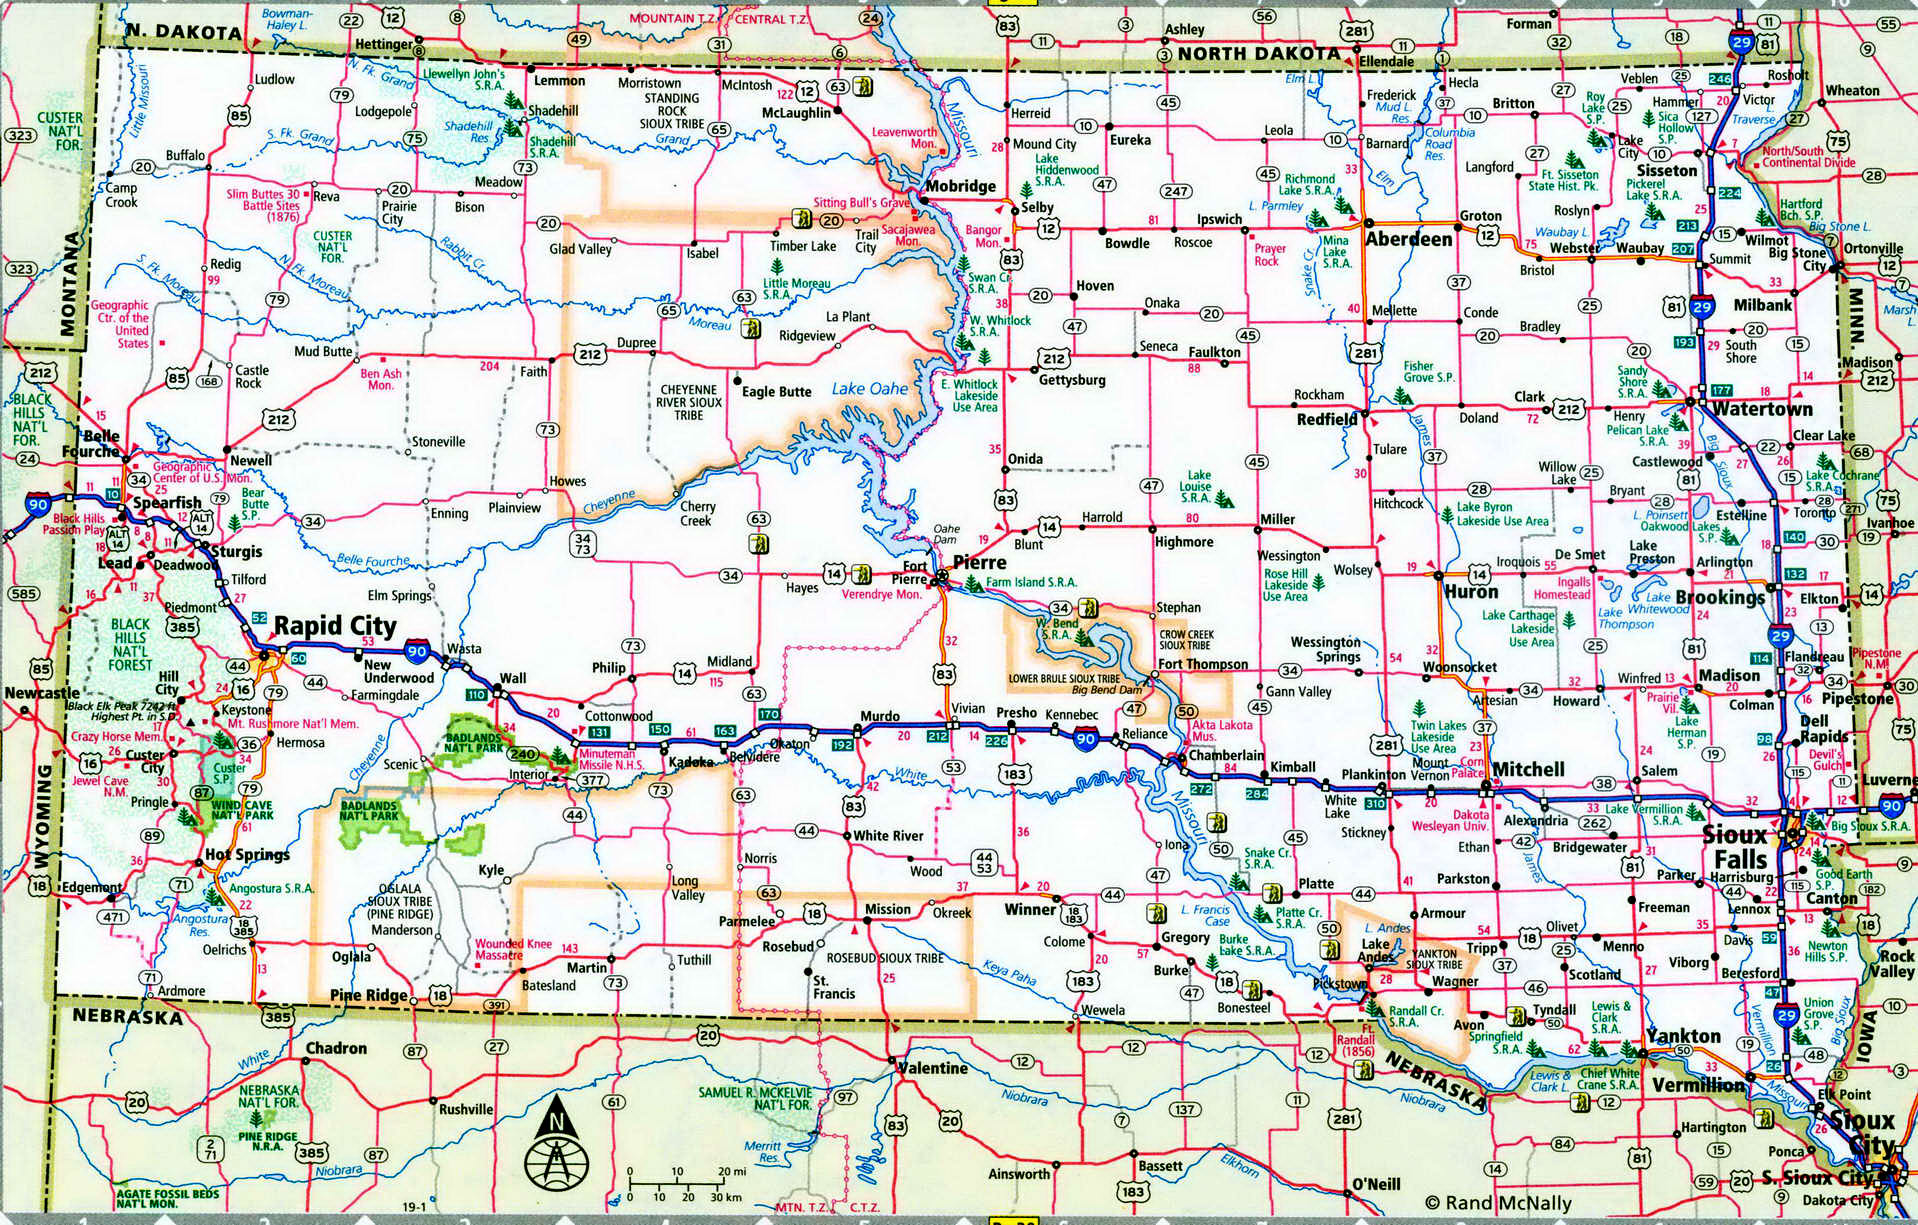 South Dakota interstate highway map